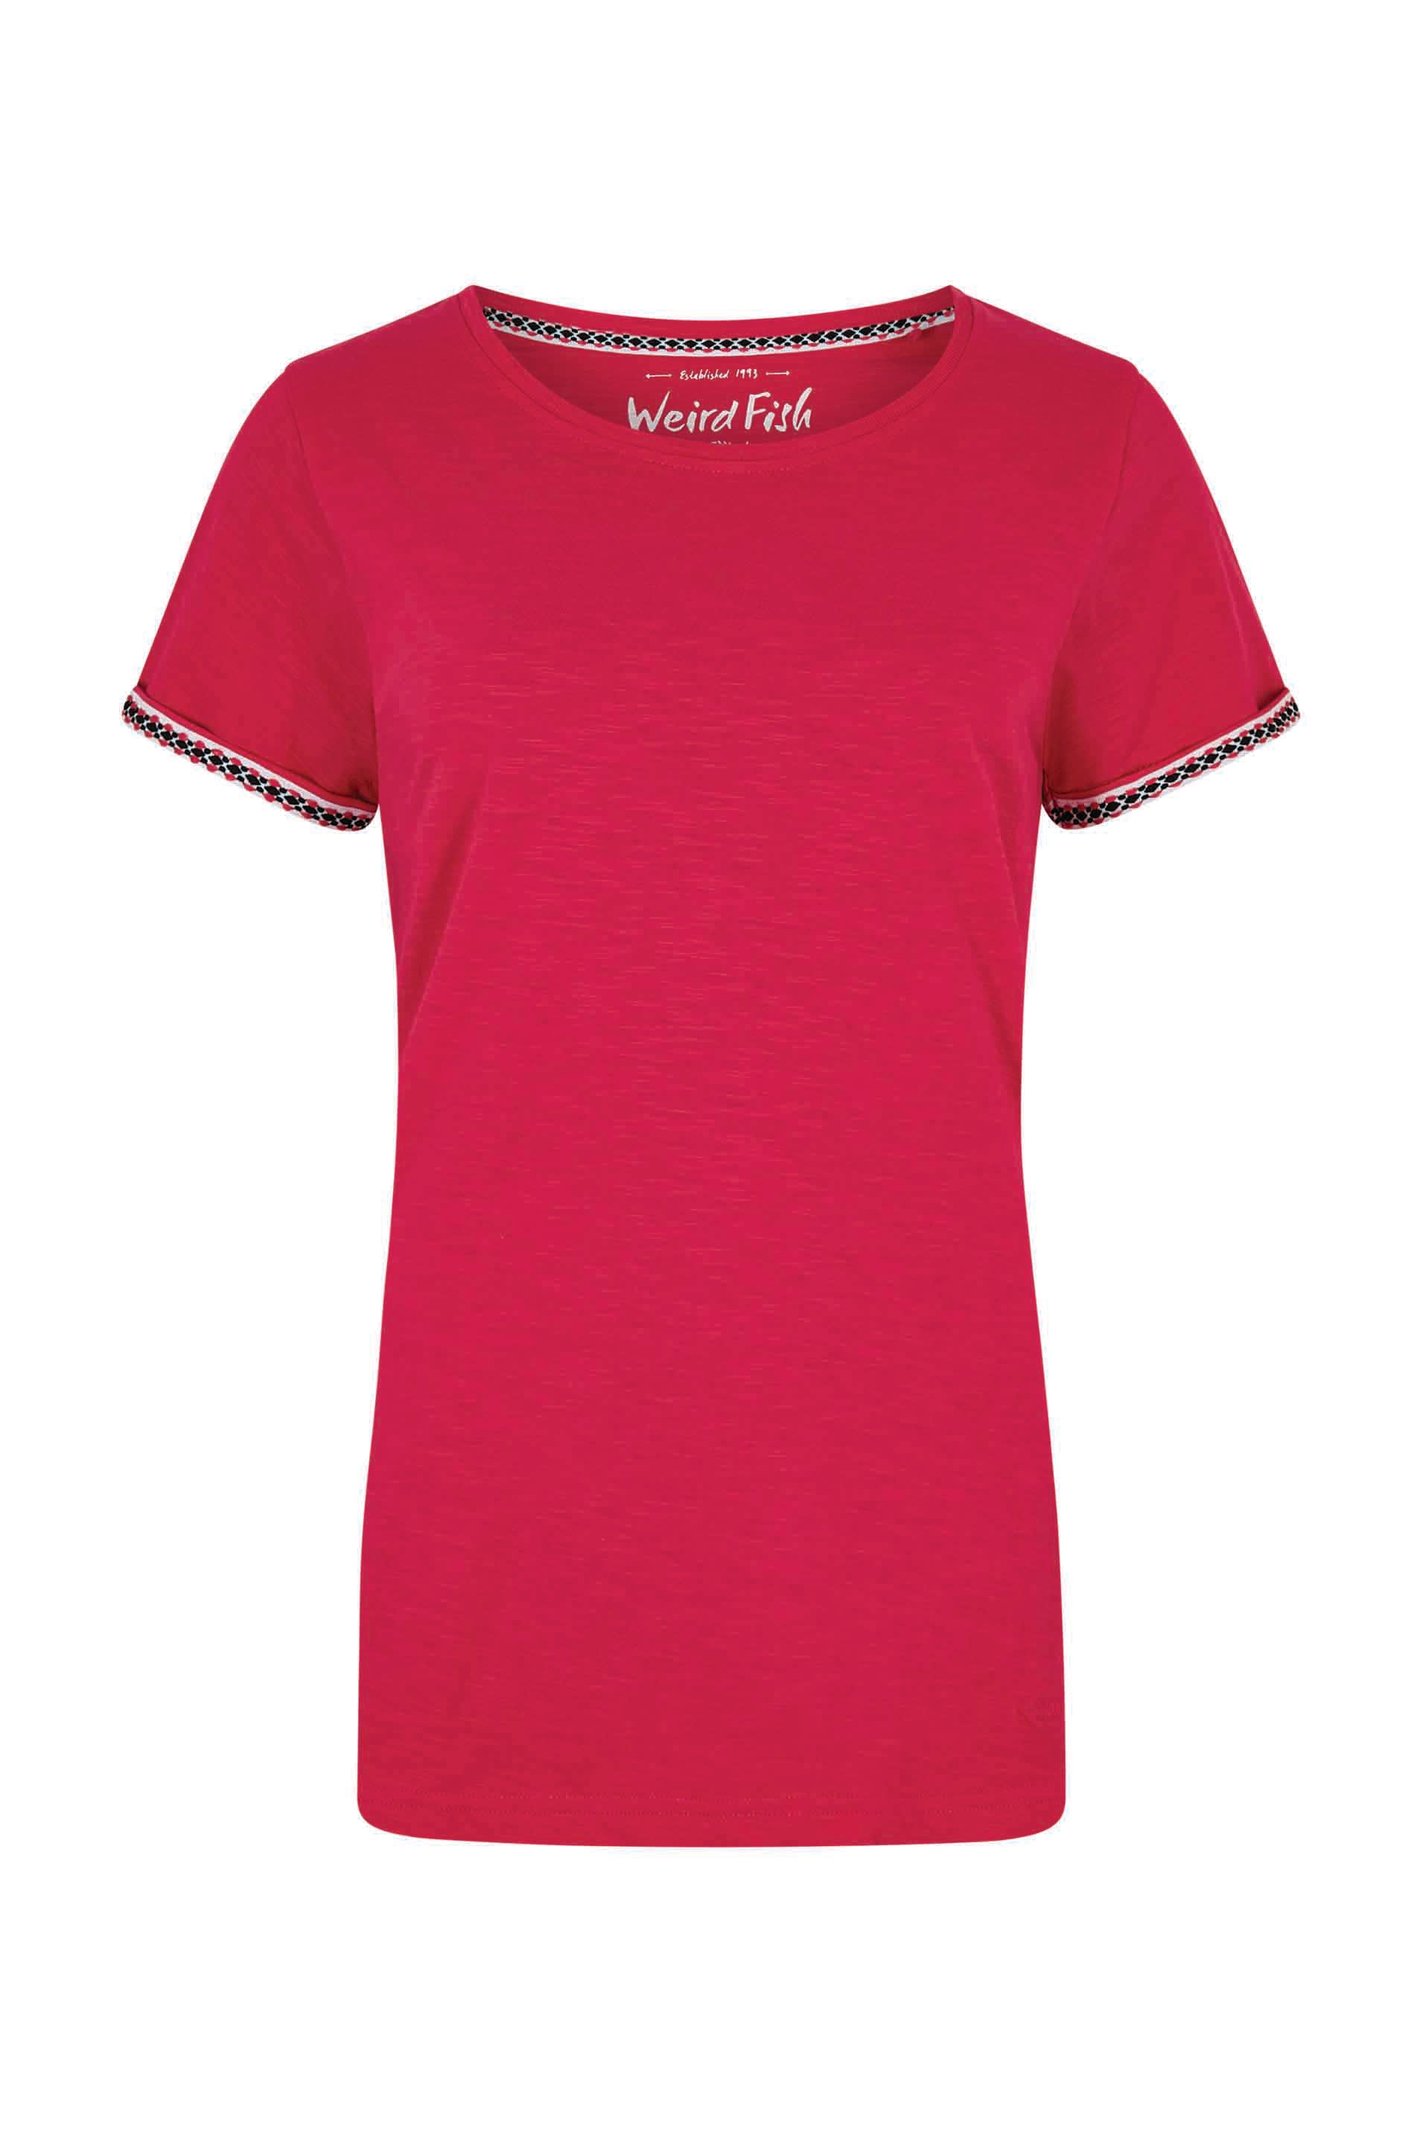 Weird Fish Teya Organic Cotton T-Shirt Hot Pink Size 18